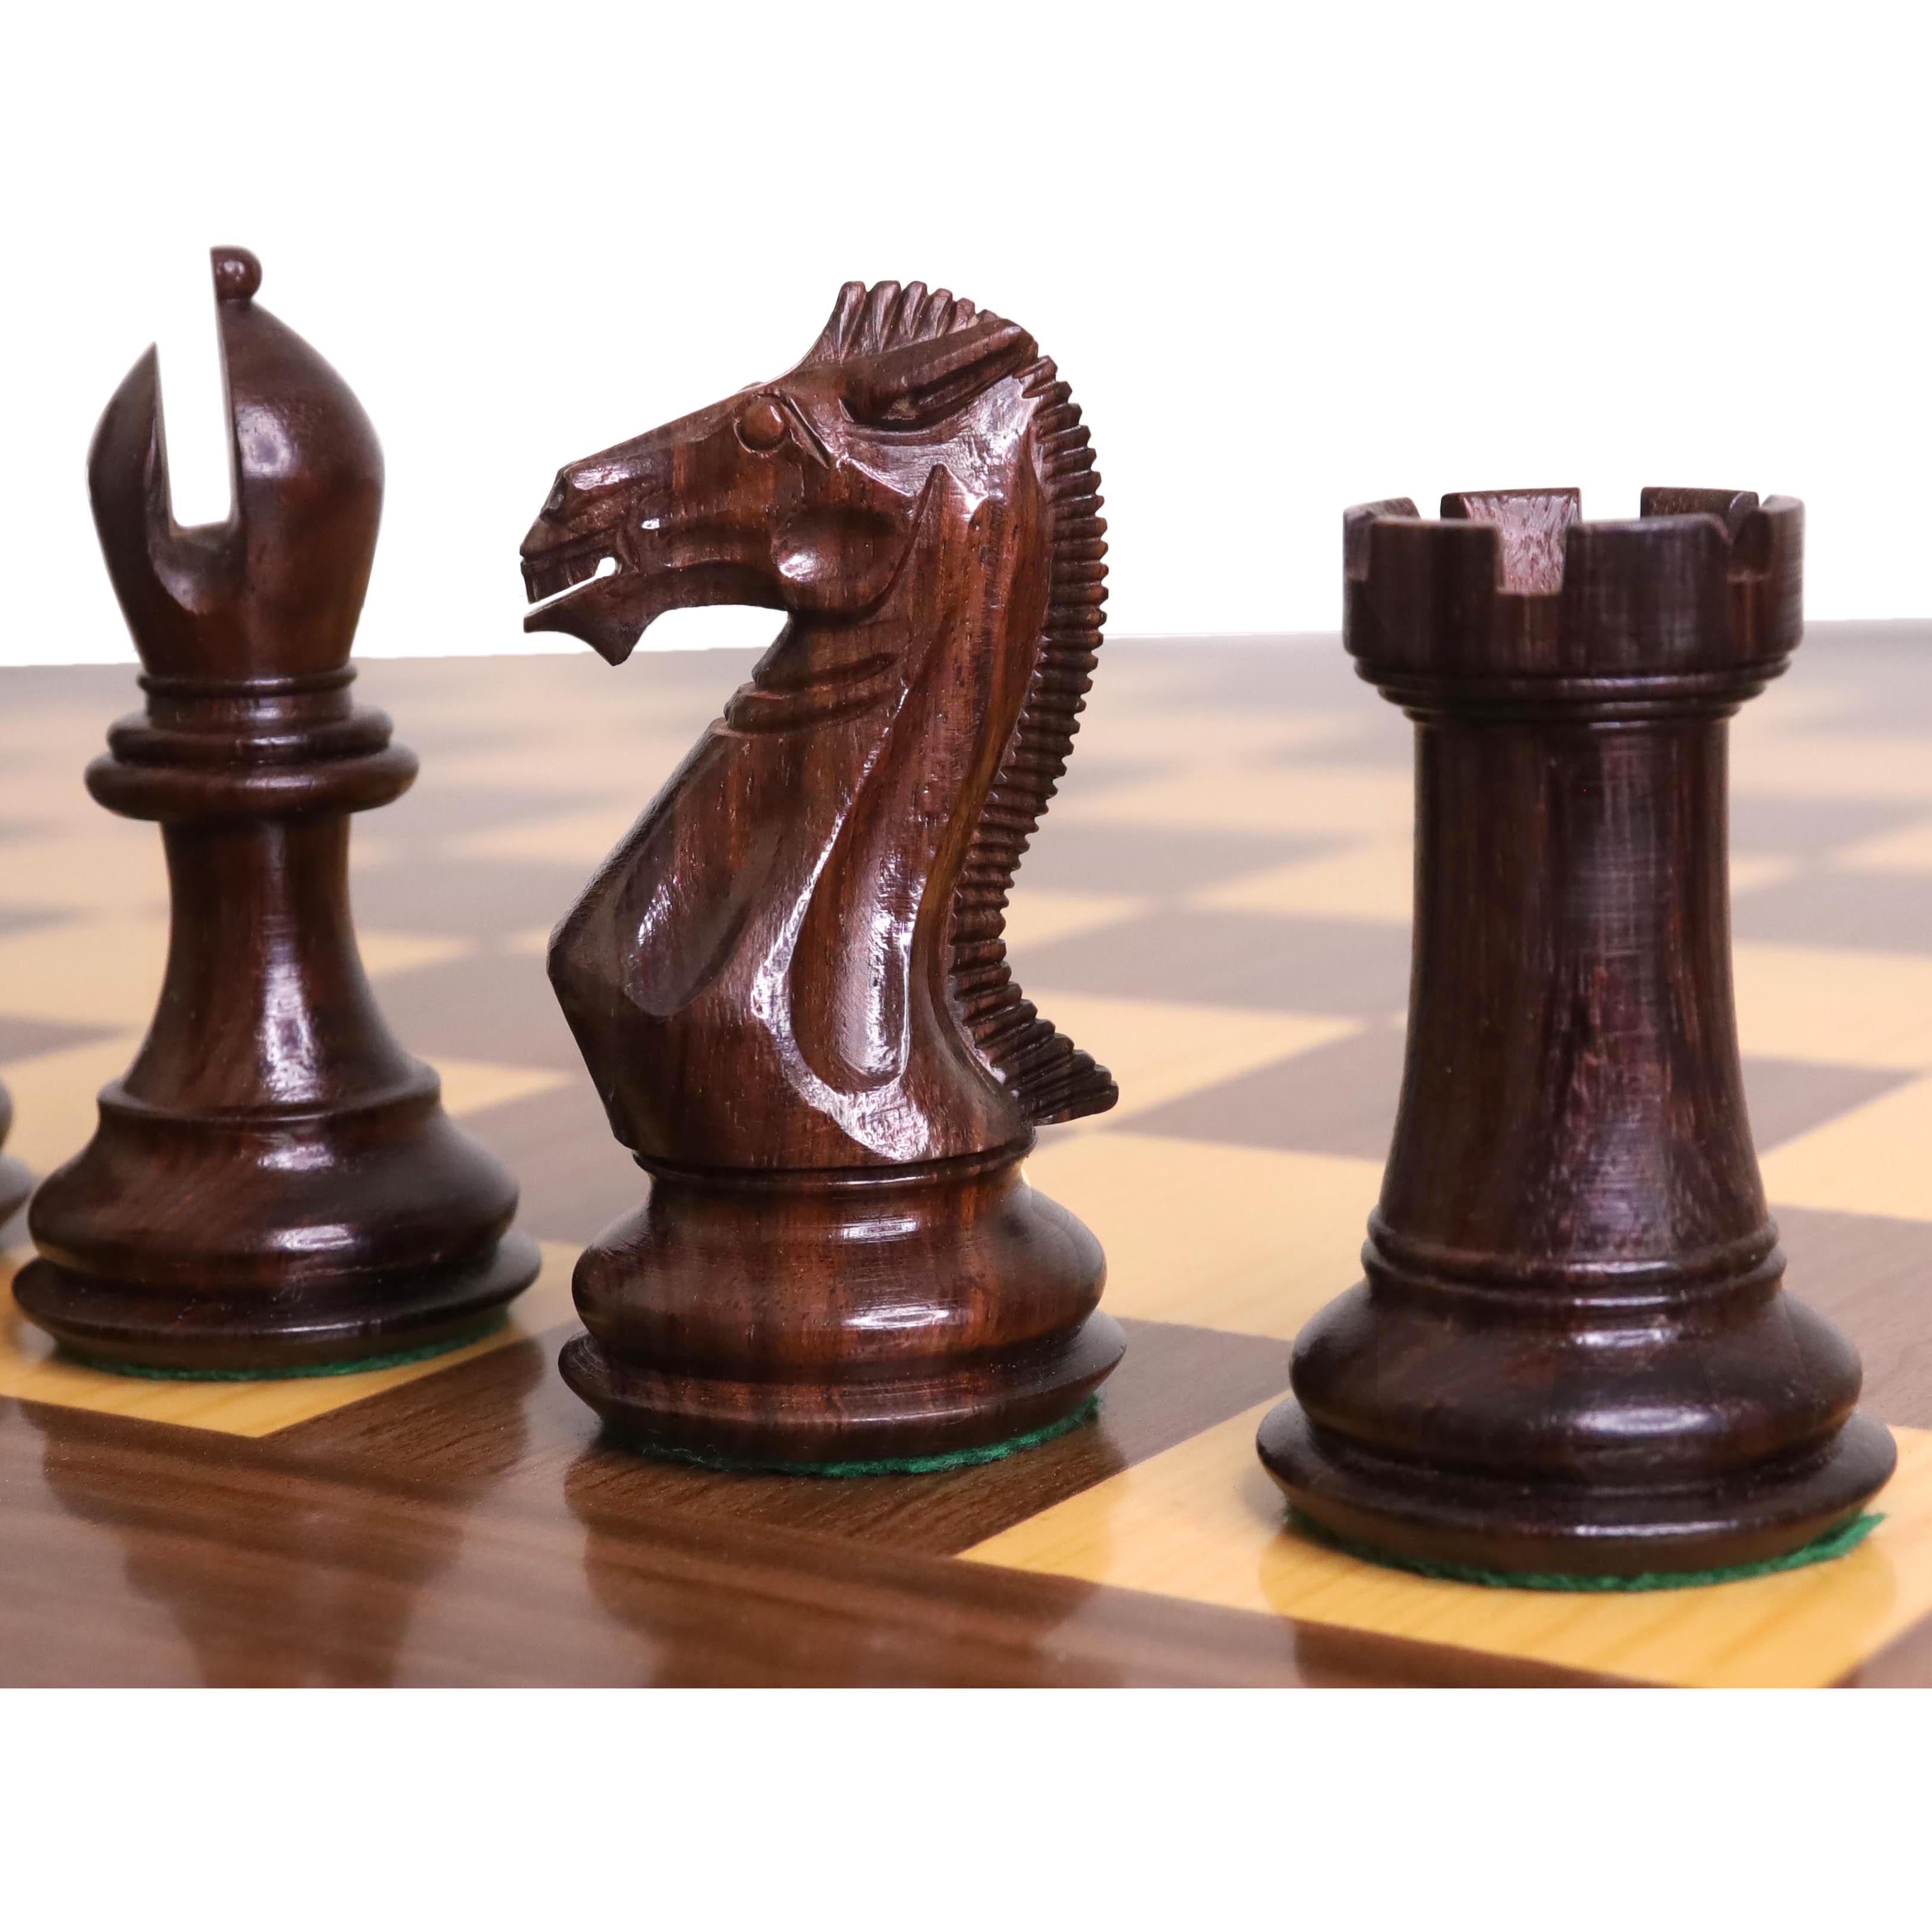 Luxurious chess set – the Trojan War